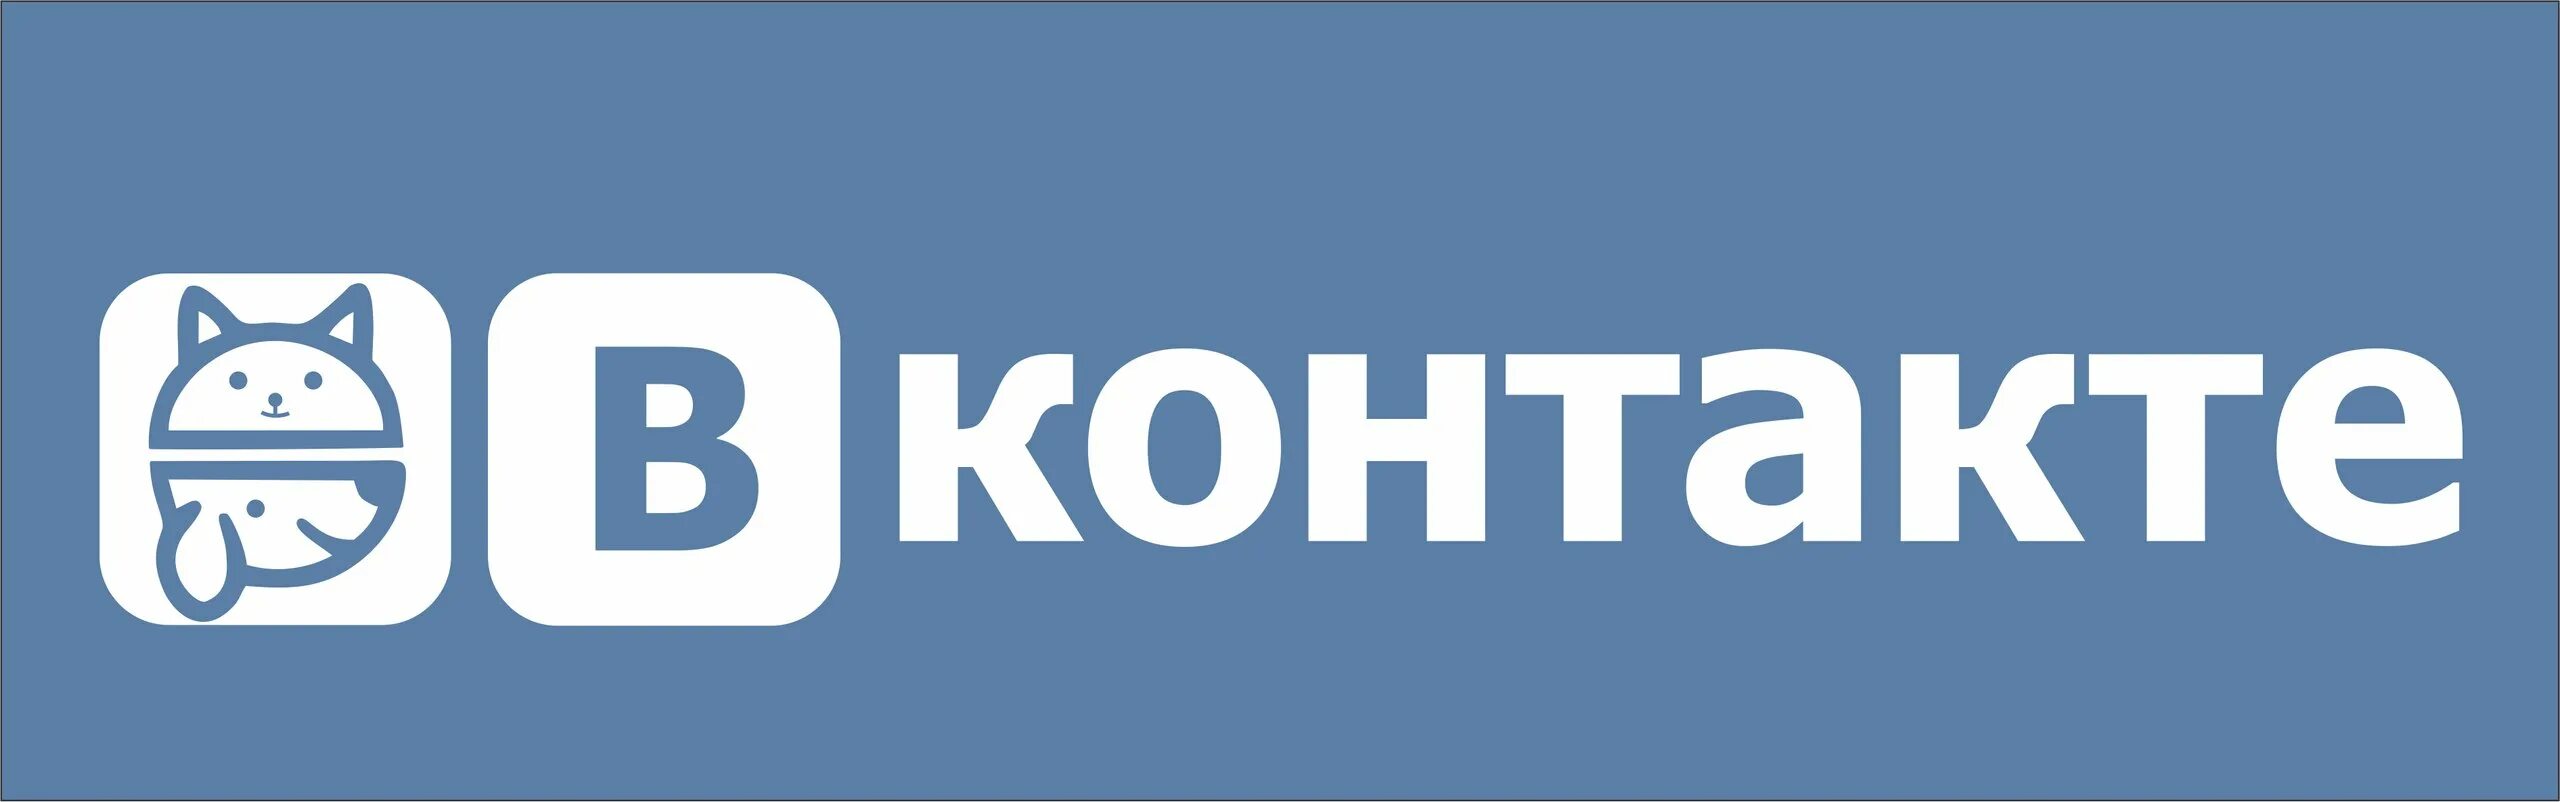 Netshtrafoff com. Логотип ВК. Значки для группы ВК. Старый логотип ВК. ВКОНТАКТЕ надпись.